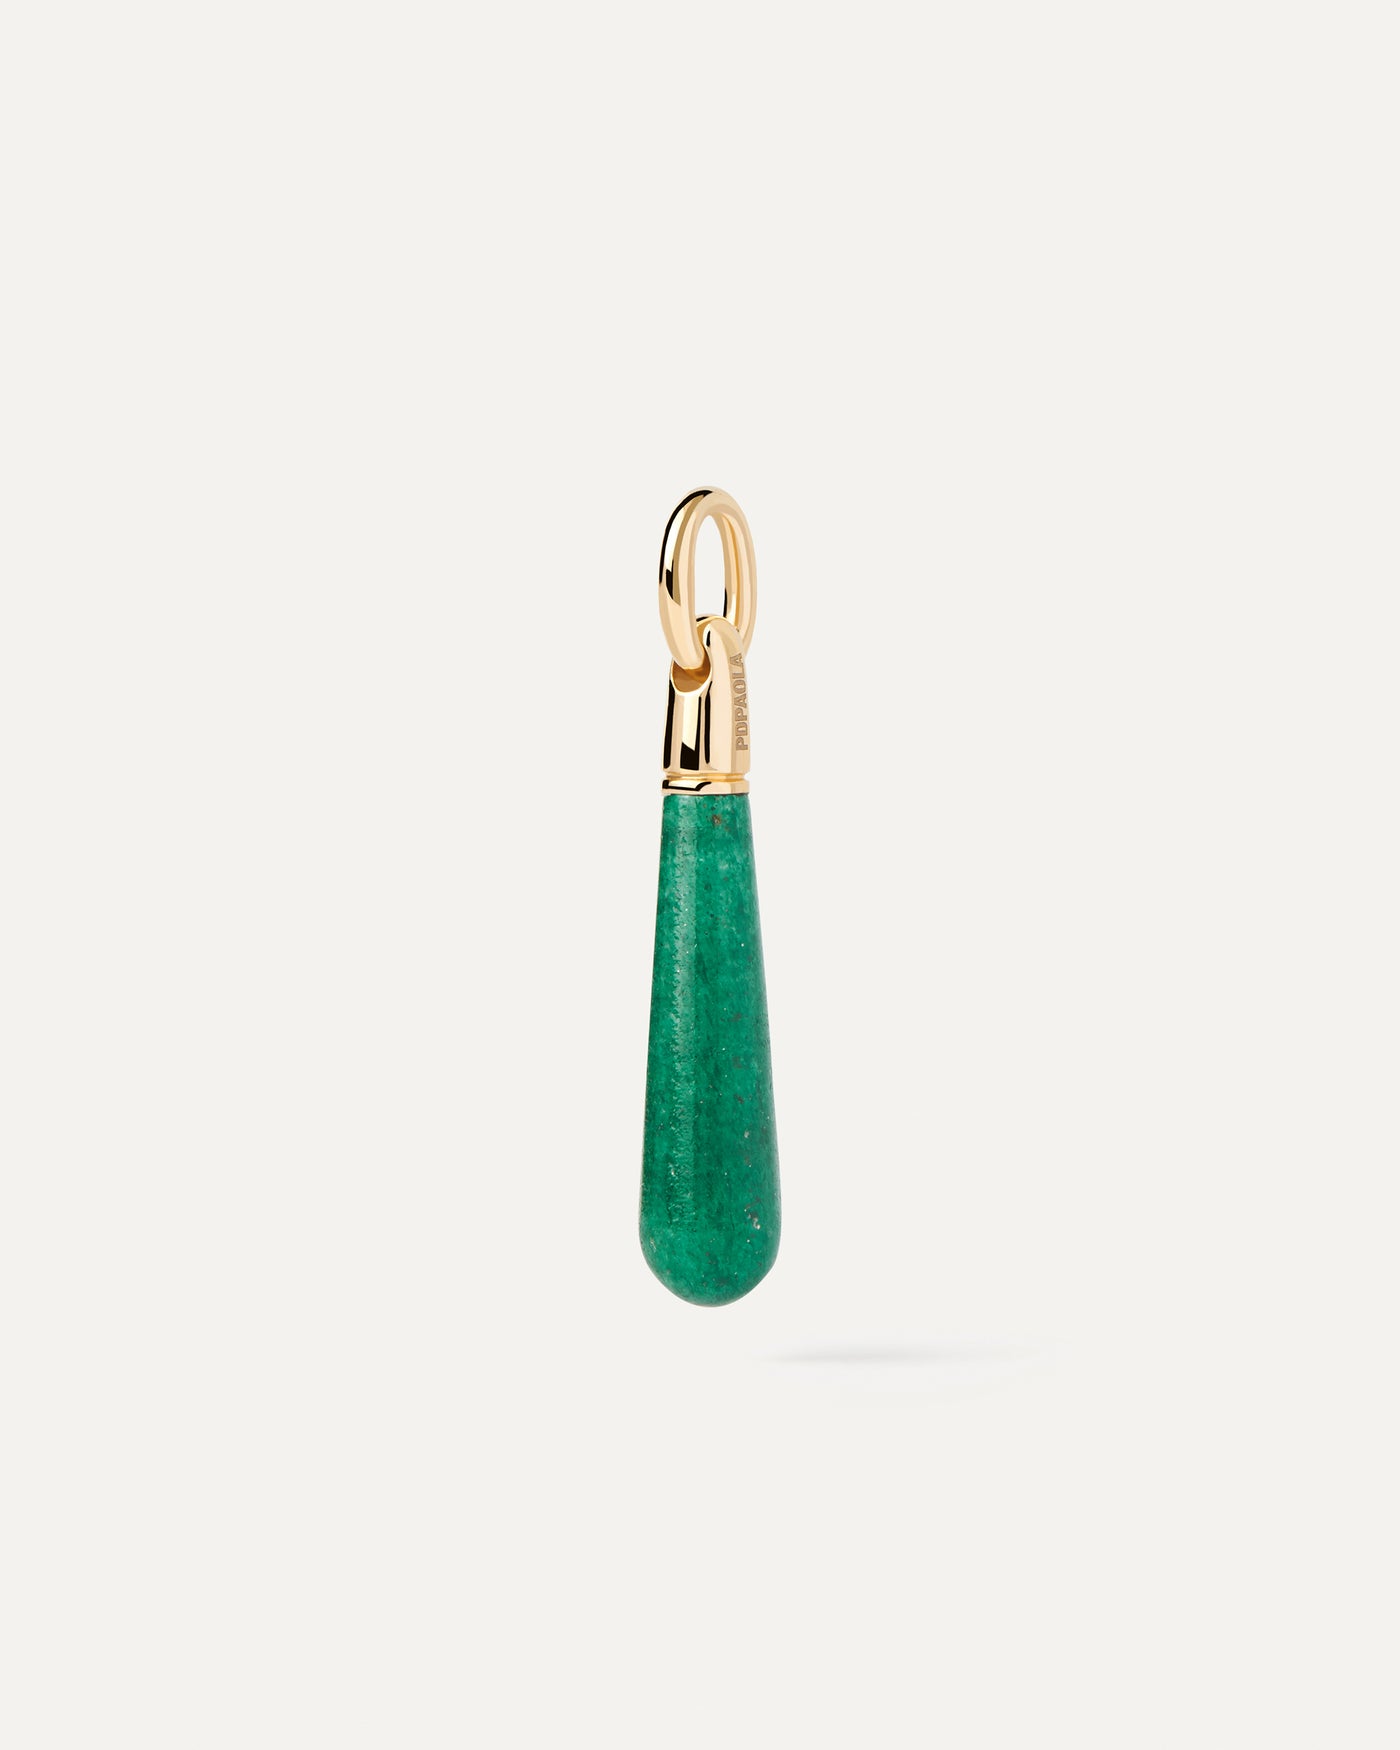 Pendentif Aventurine Verte Large Drop. Goutte pendentif de pierre verte à personnaliser pour collier ou boucles d'oreilles. Découvrez les dernières nouveautés de chez PDPAOLA. Commandez et recevez votre bijou en toute sérénité.